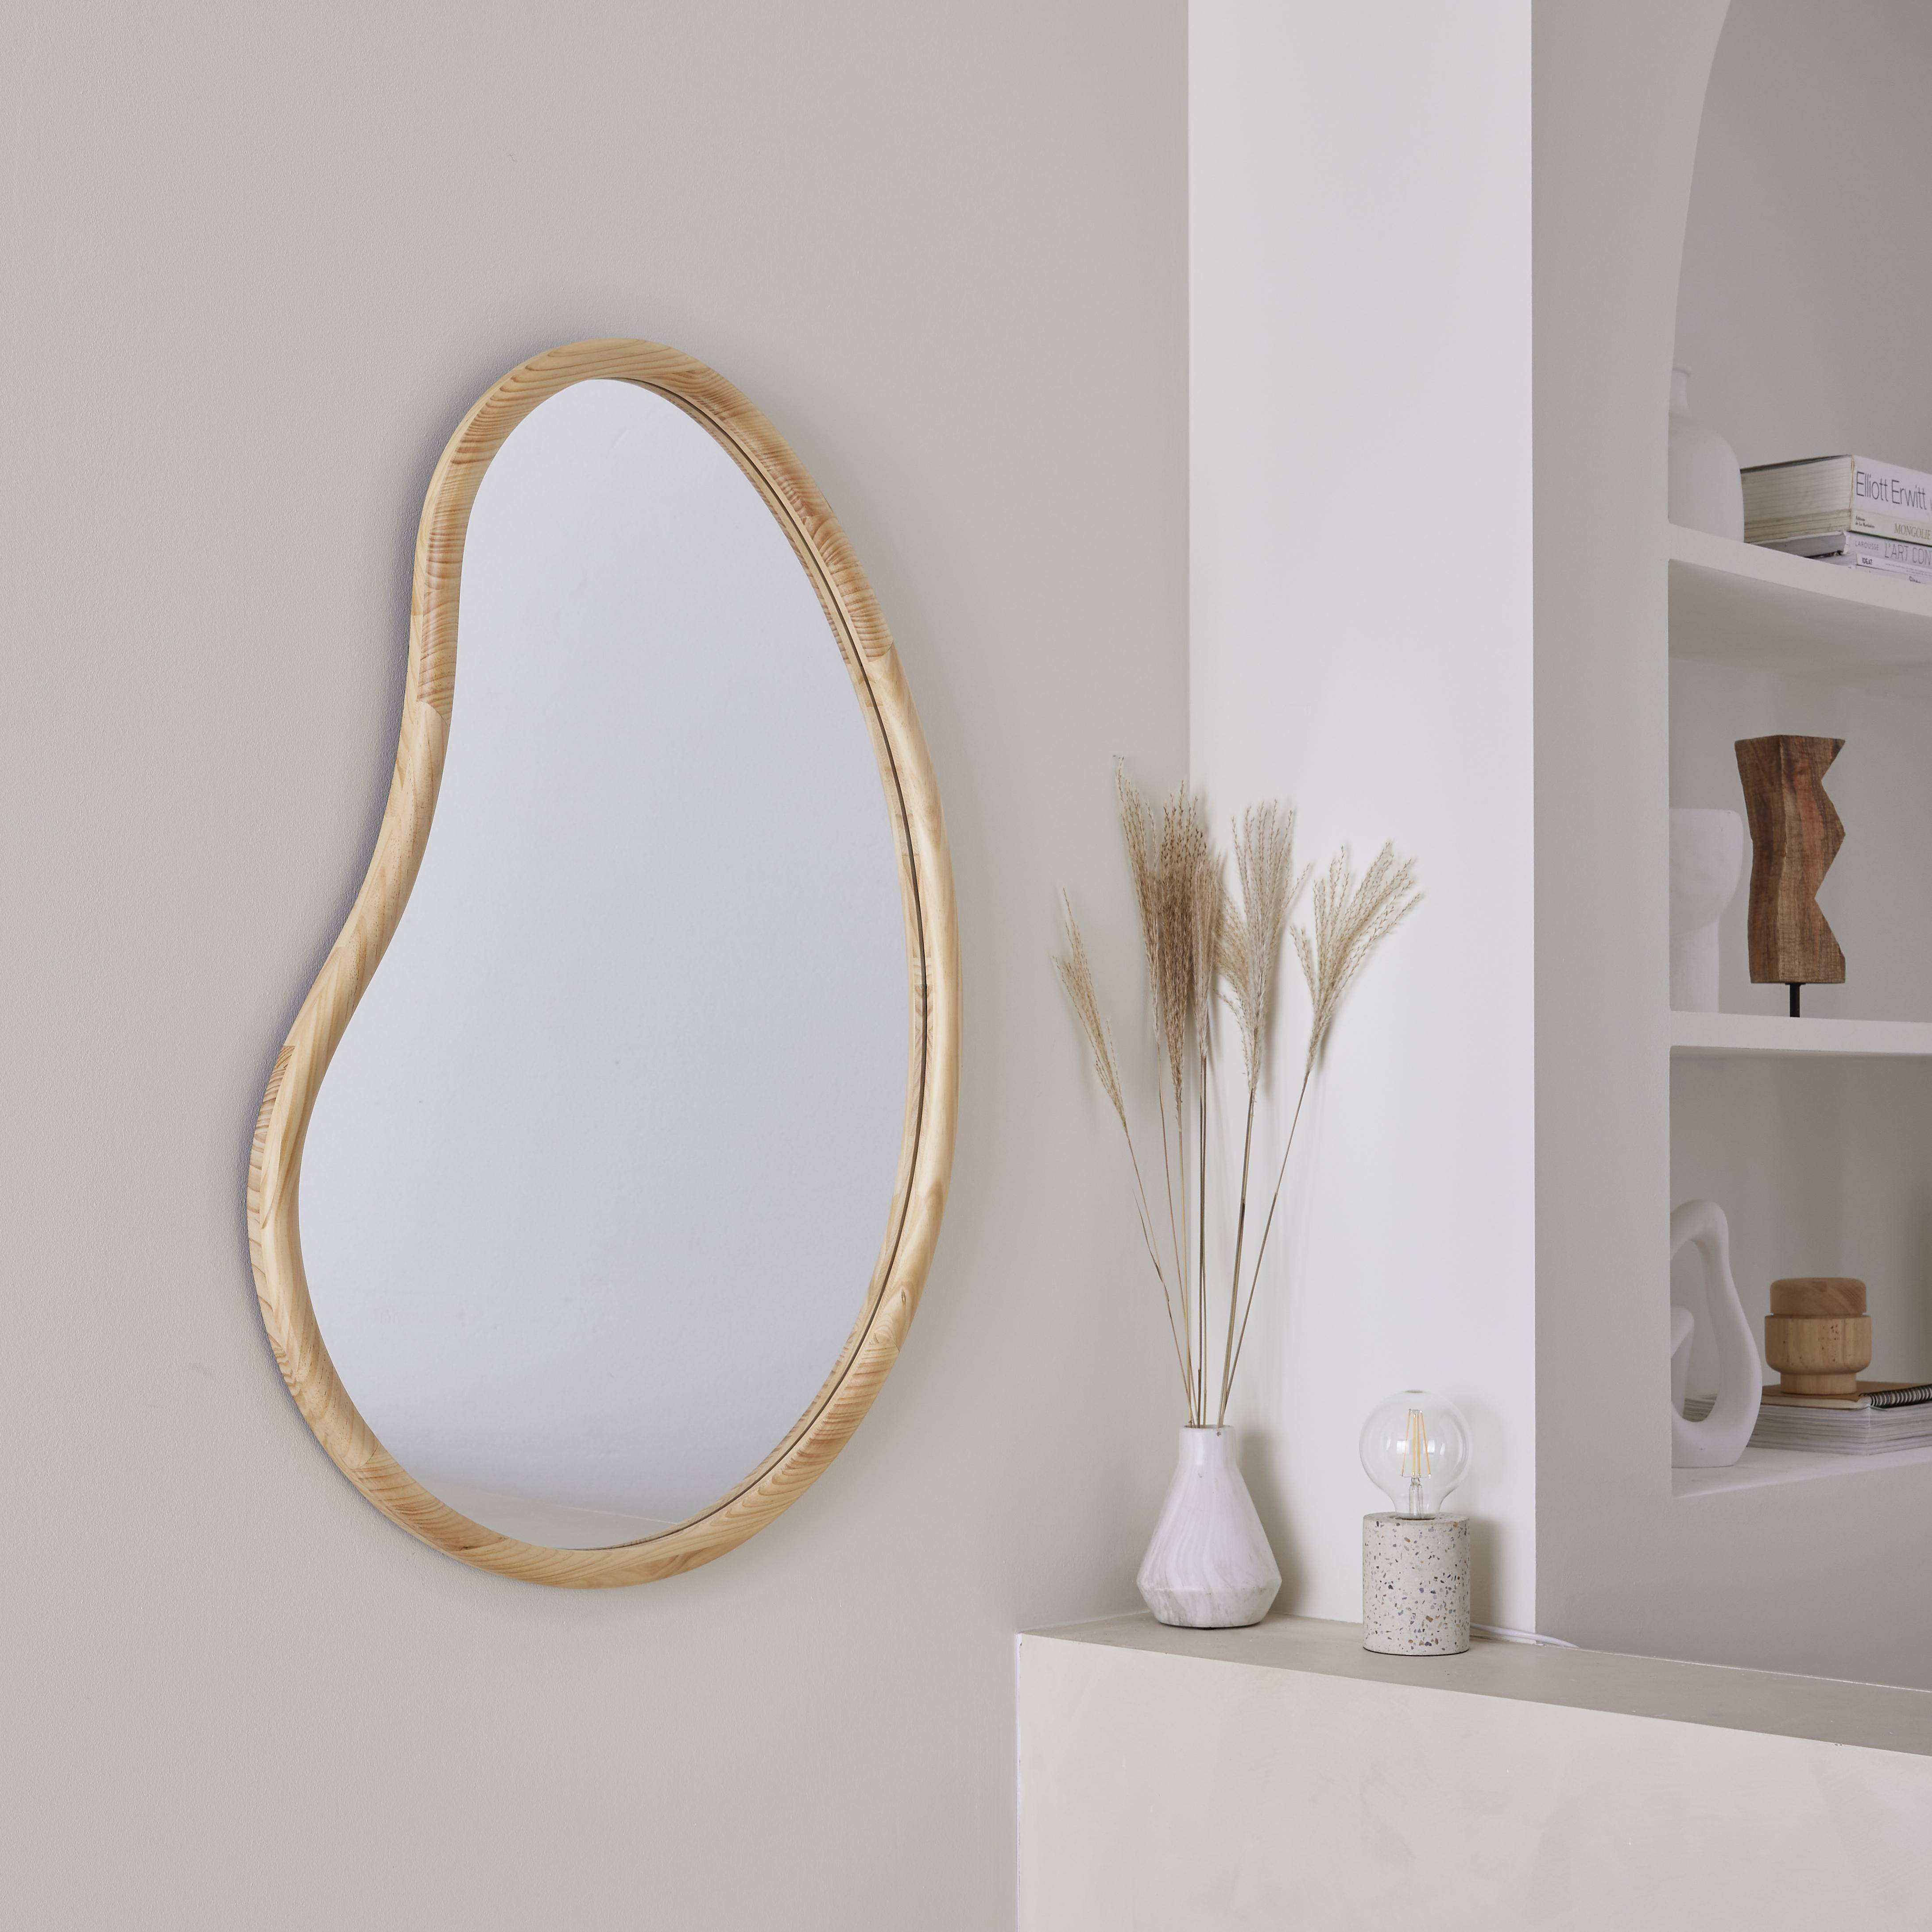 Miroir organique en bois de sapin 95cm épaisseur 3cm coloris naturel idéal entrée, chambre ou salle de bain,sweeek,Photo1